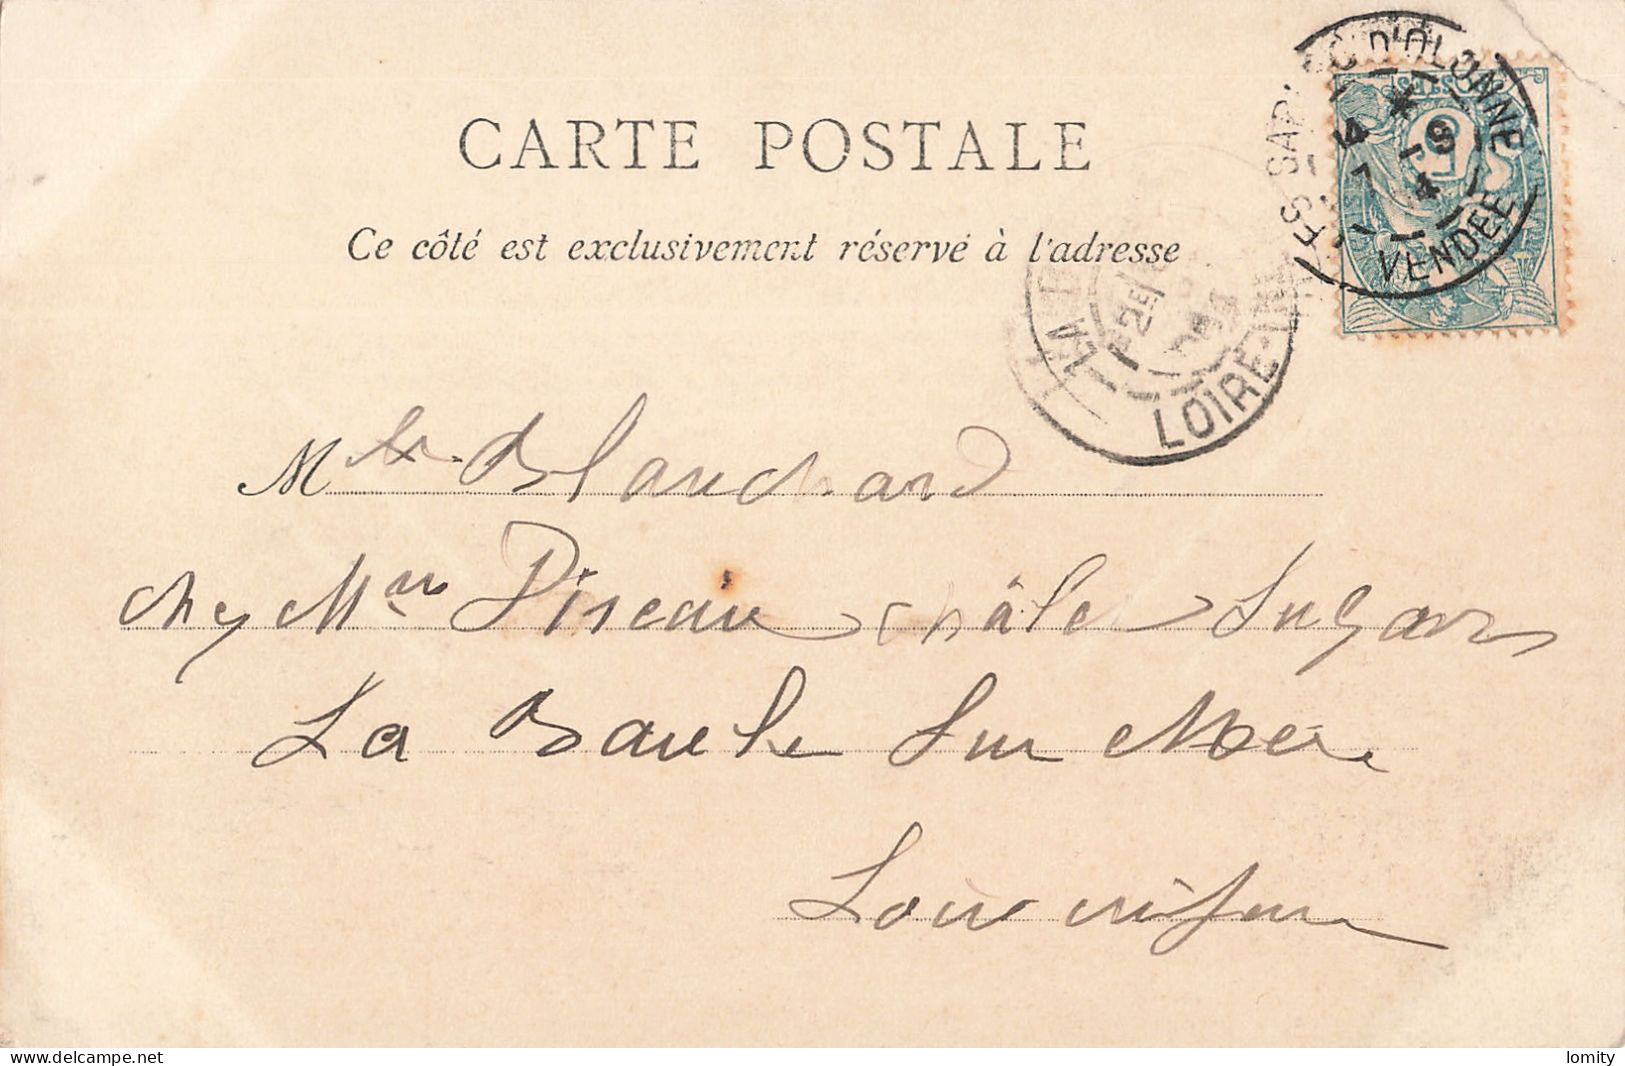 Destockage lot de 8 cartes postales CPA Vendée Saint Jean de Monts Sablaise Sables d' Olonne Noirmoutier